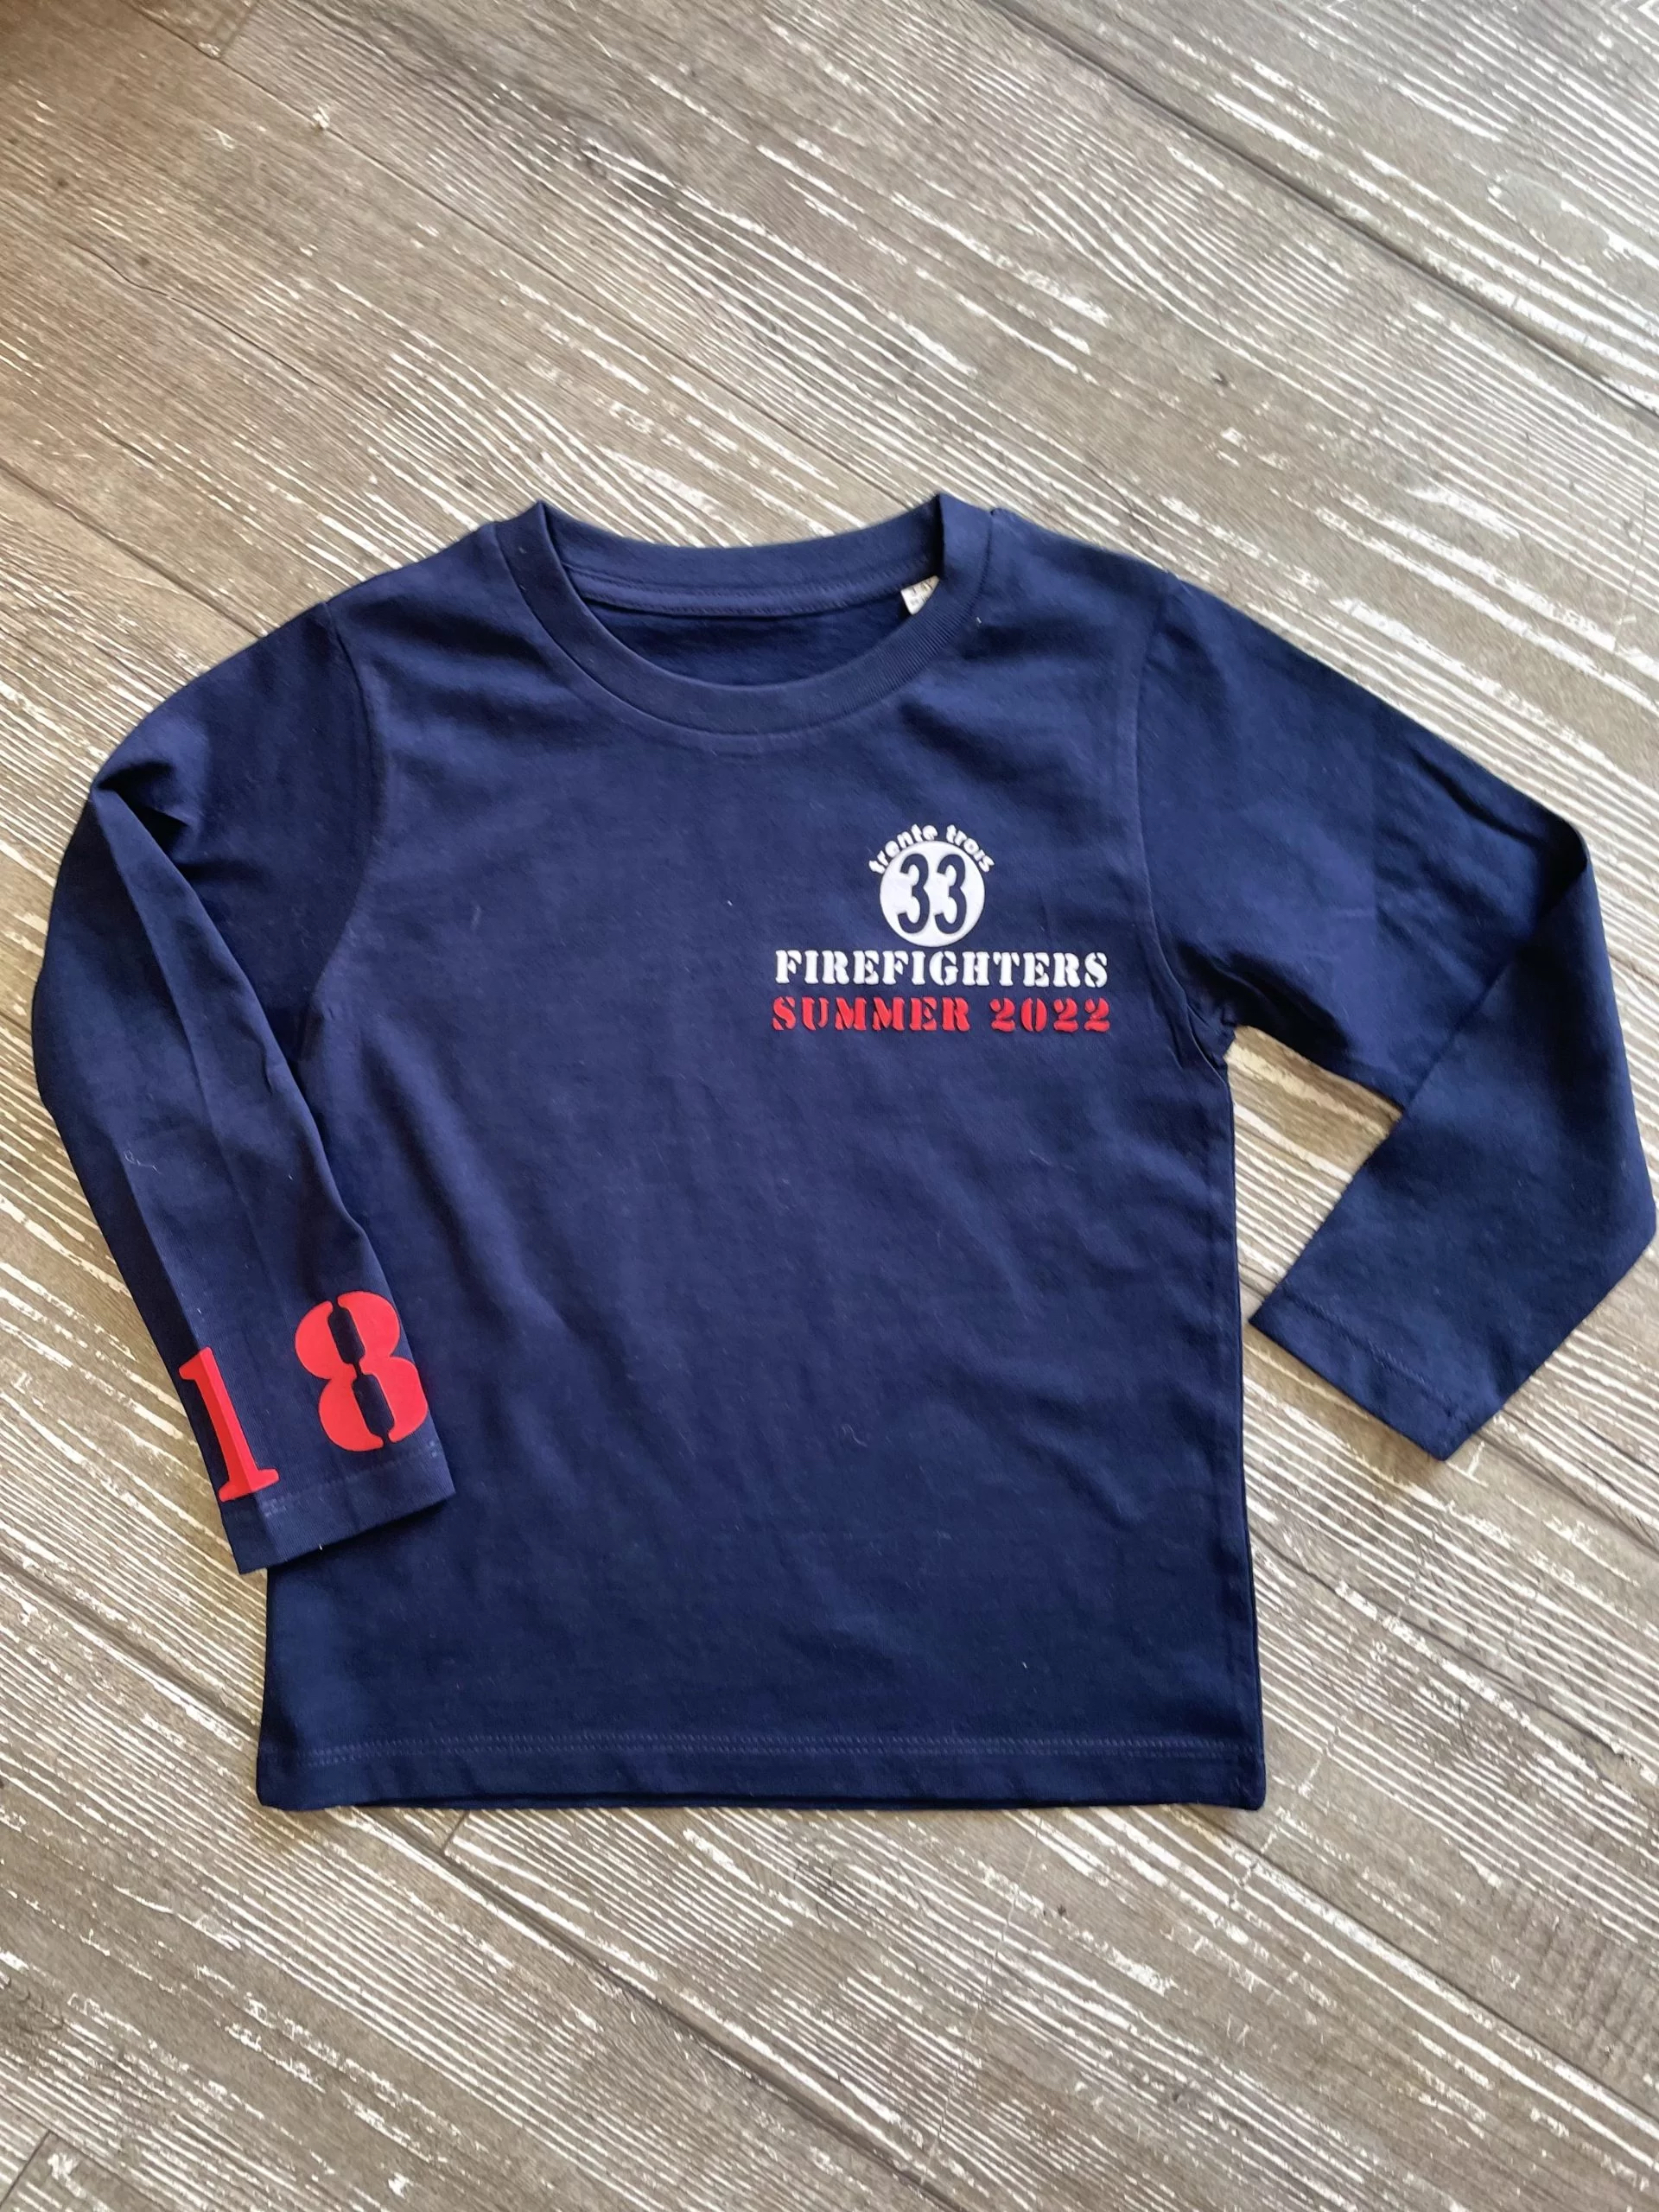 Un tee-shirt marine à manches longues pour garçon, estampillé "Firefighters" de la marque régionale 33.